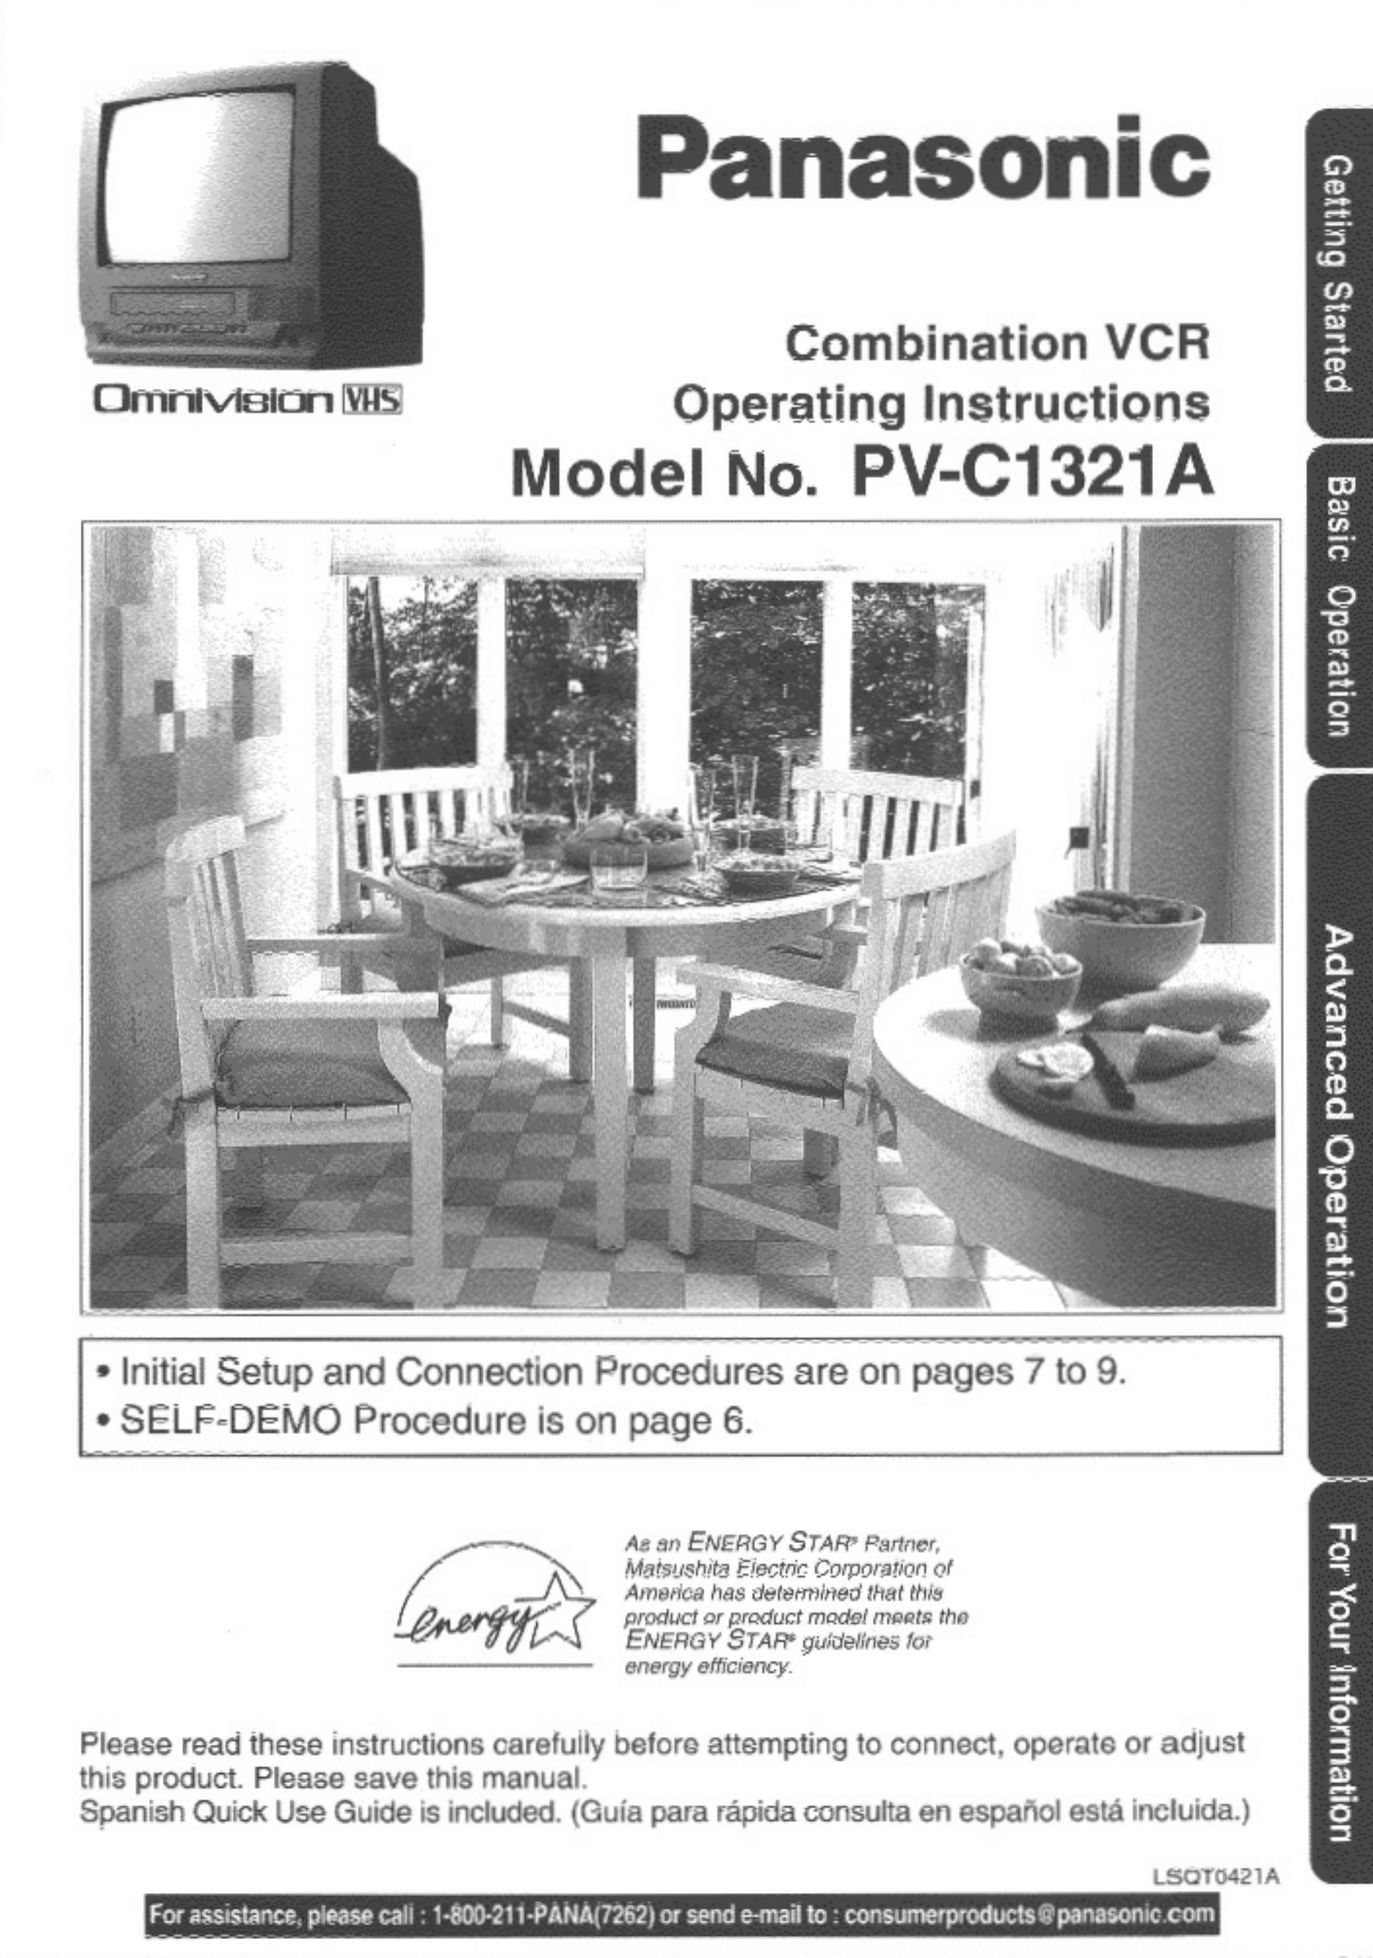 Panasonic PV-C1321A TV VCR Combo User Manual